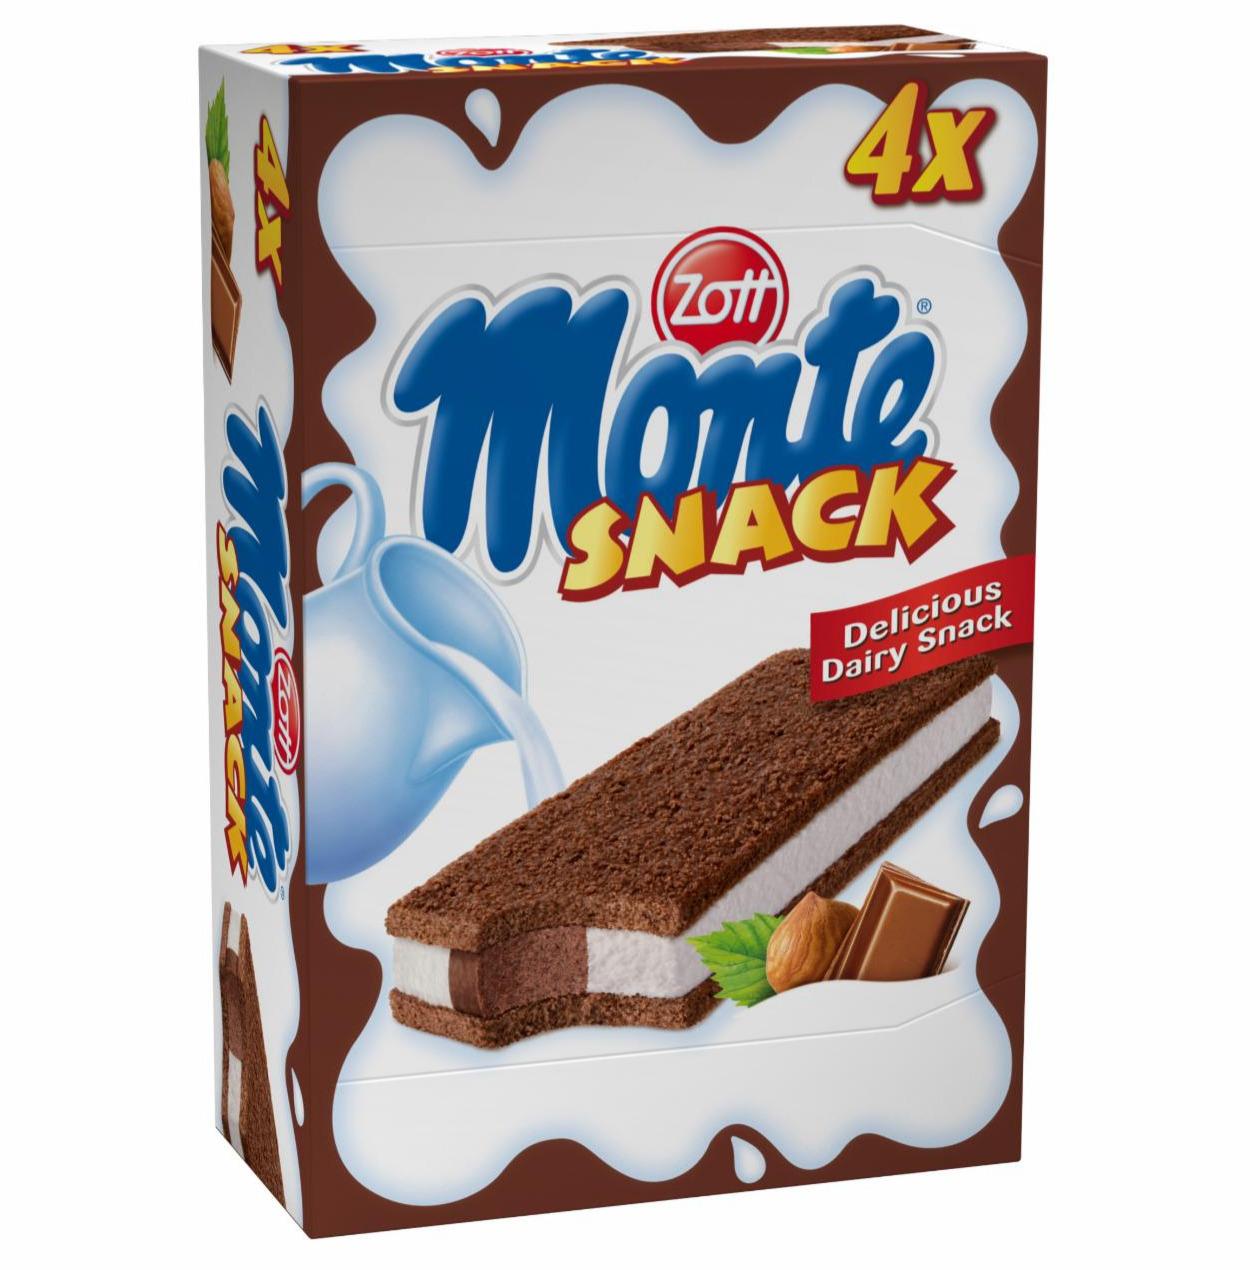 Zdjęcia - Monte Snack Ciastko z kremem mlecznym i czekoladowo-orzechowym Zott